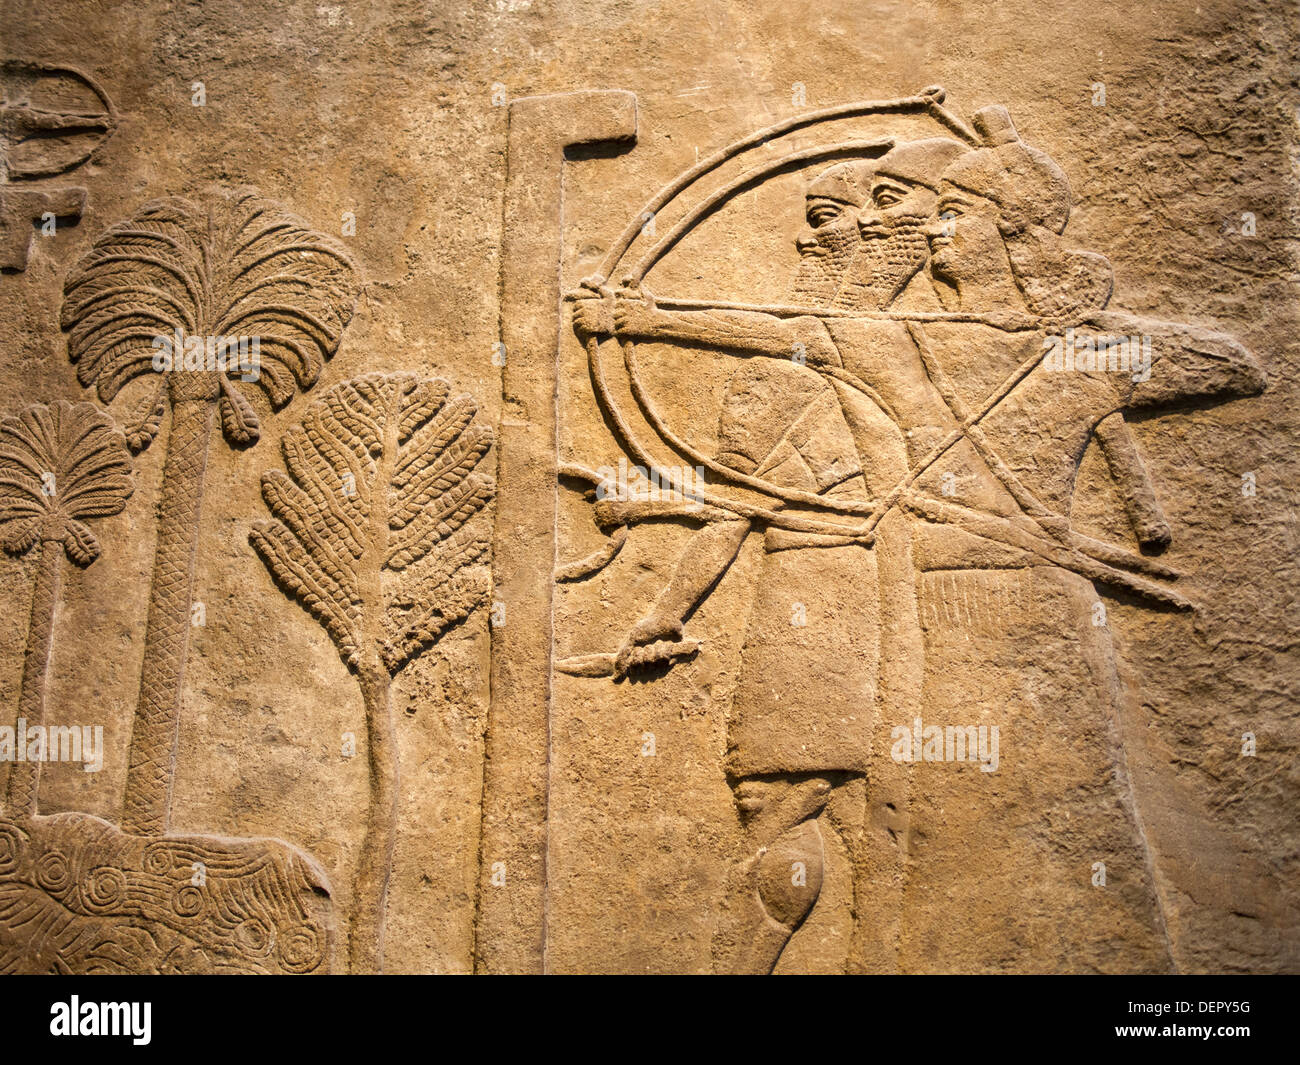 Das British Museum, London - assyrischen Fries eine Stadt unter Belagerung von Palast von Tiglat Pileser III in Nimrud Stockfoto